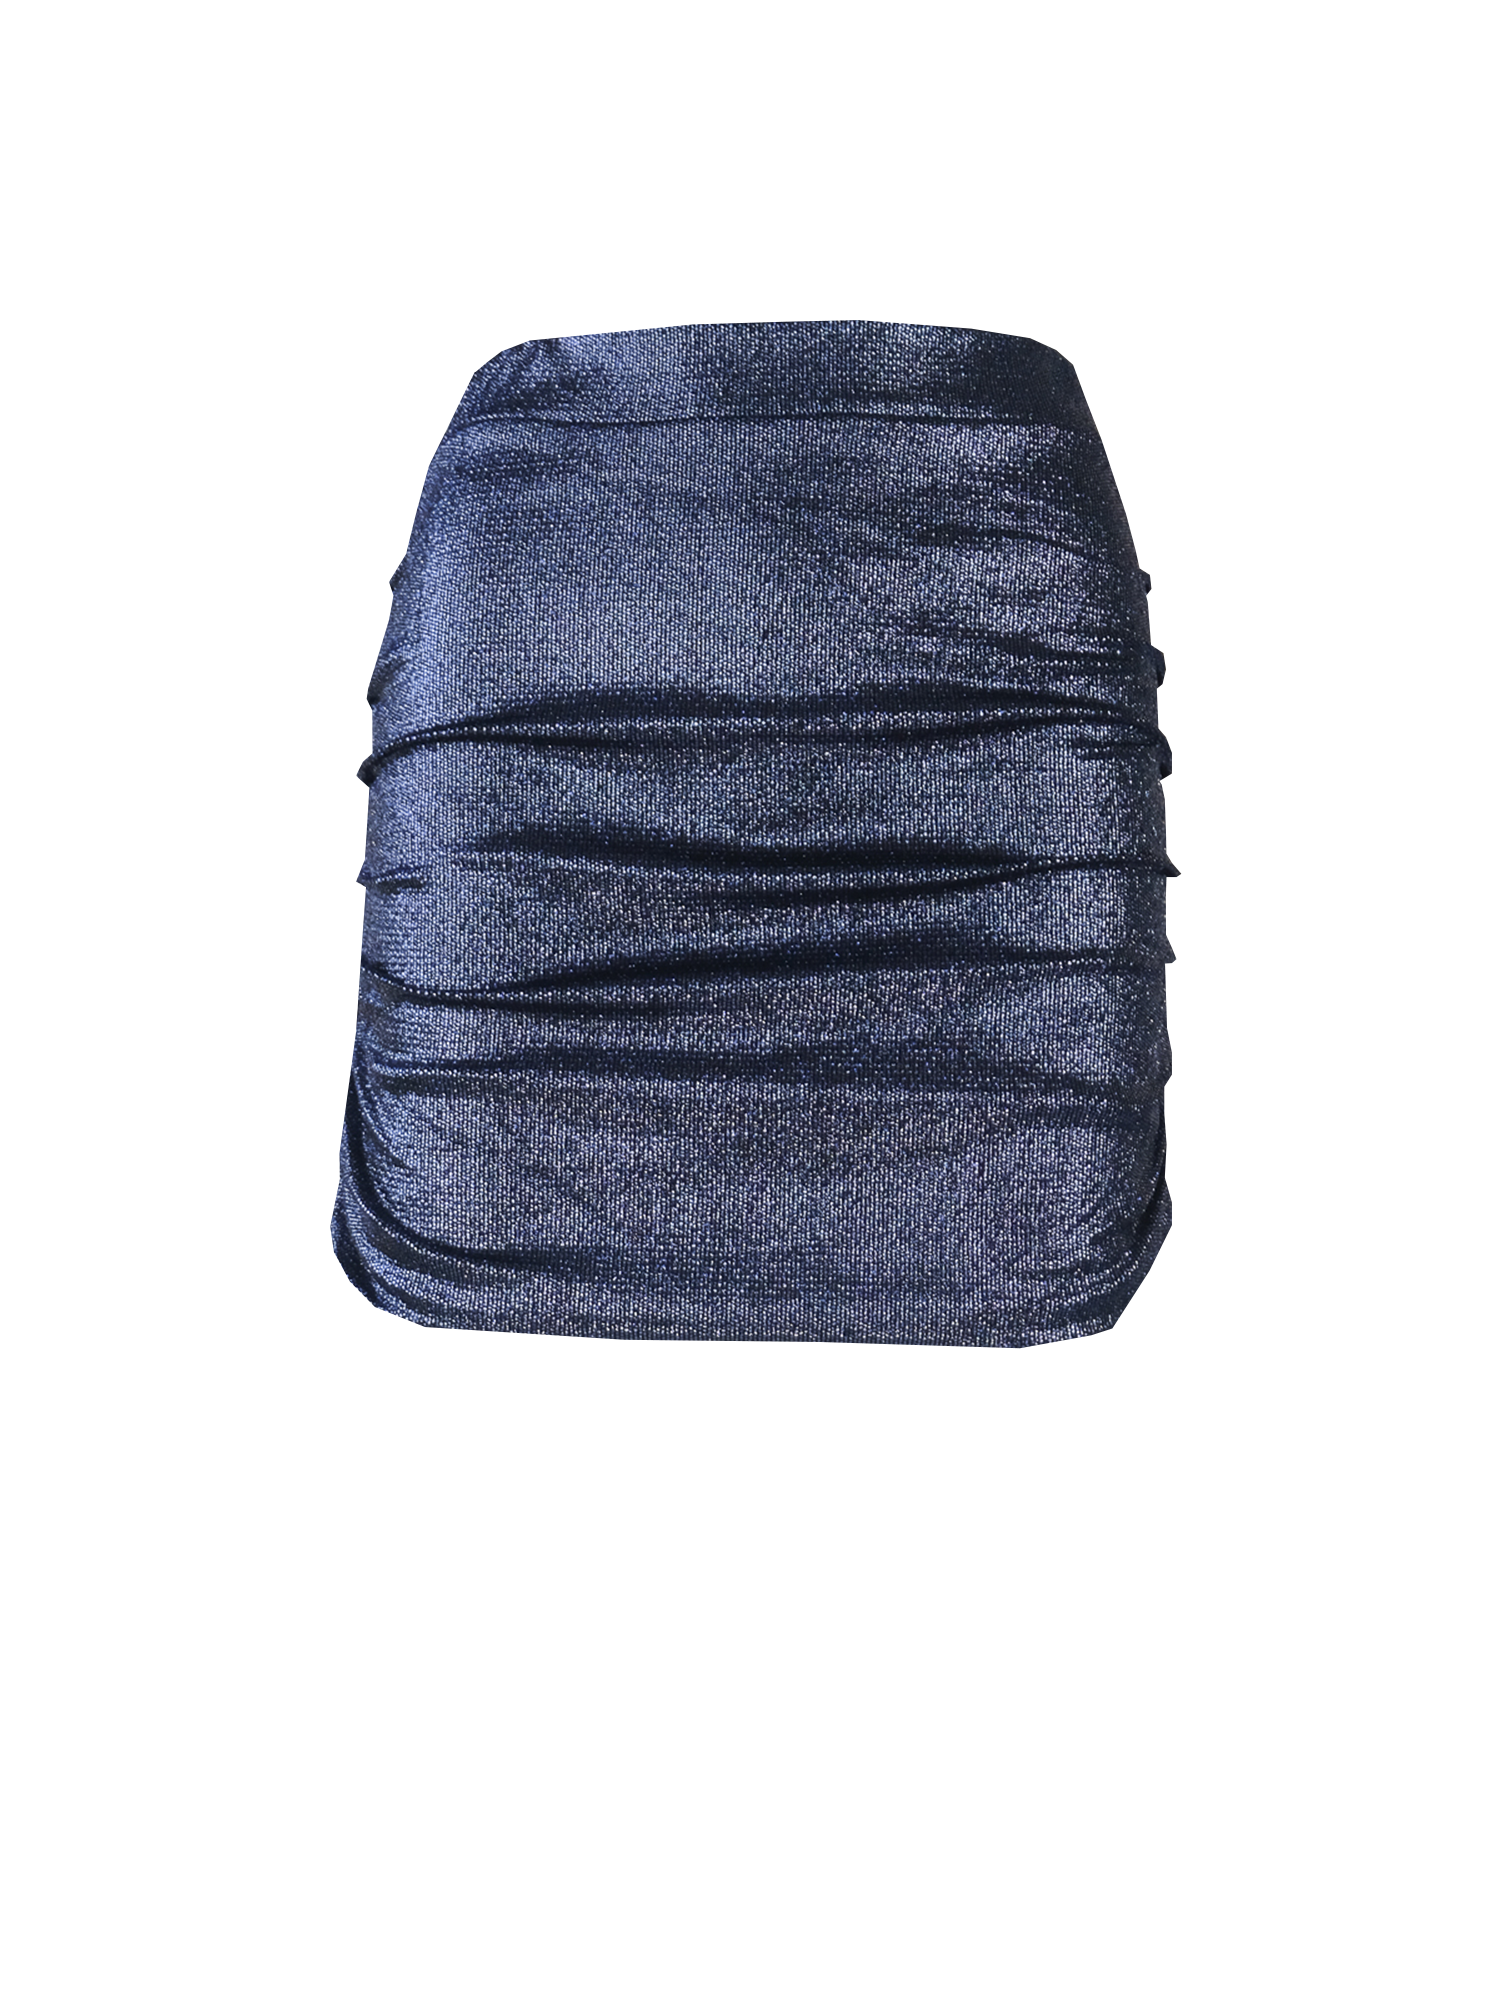 NINA - drap skirt in blue lurex